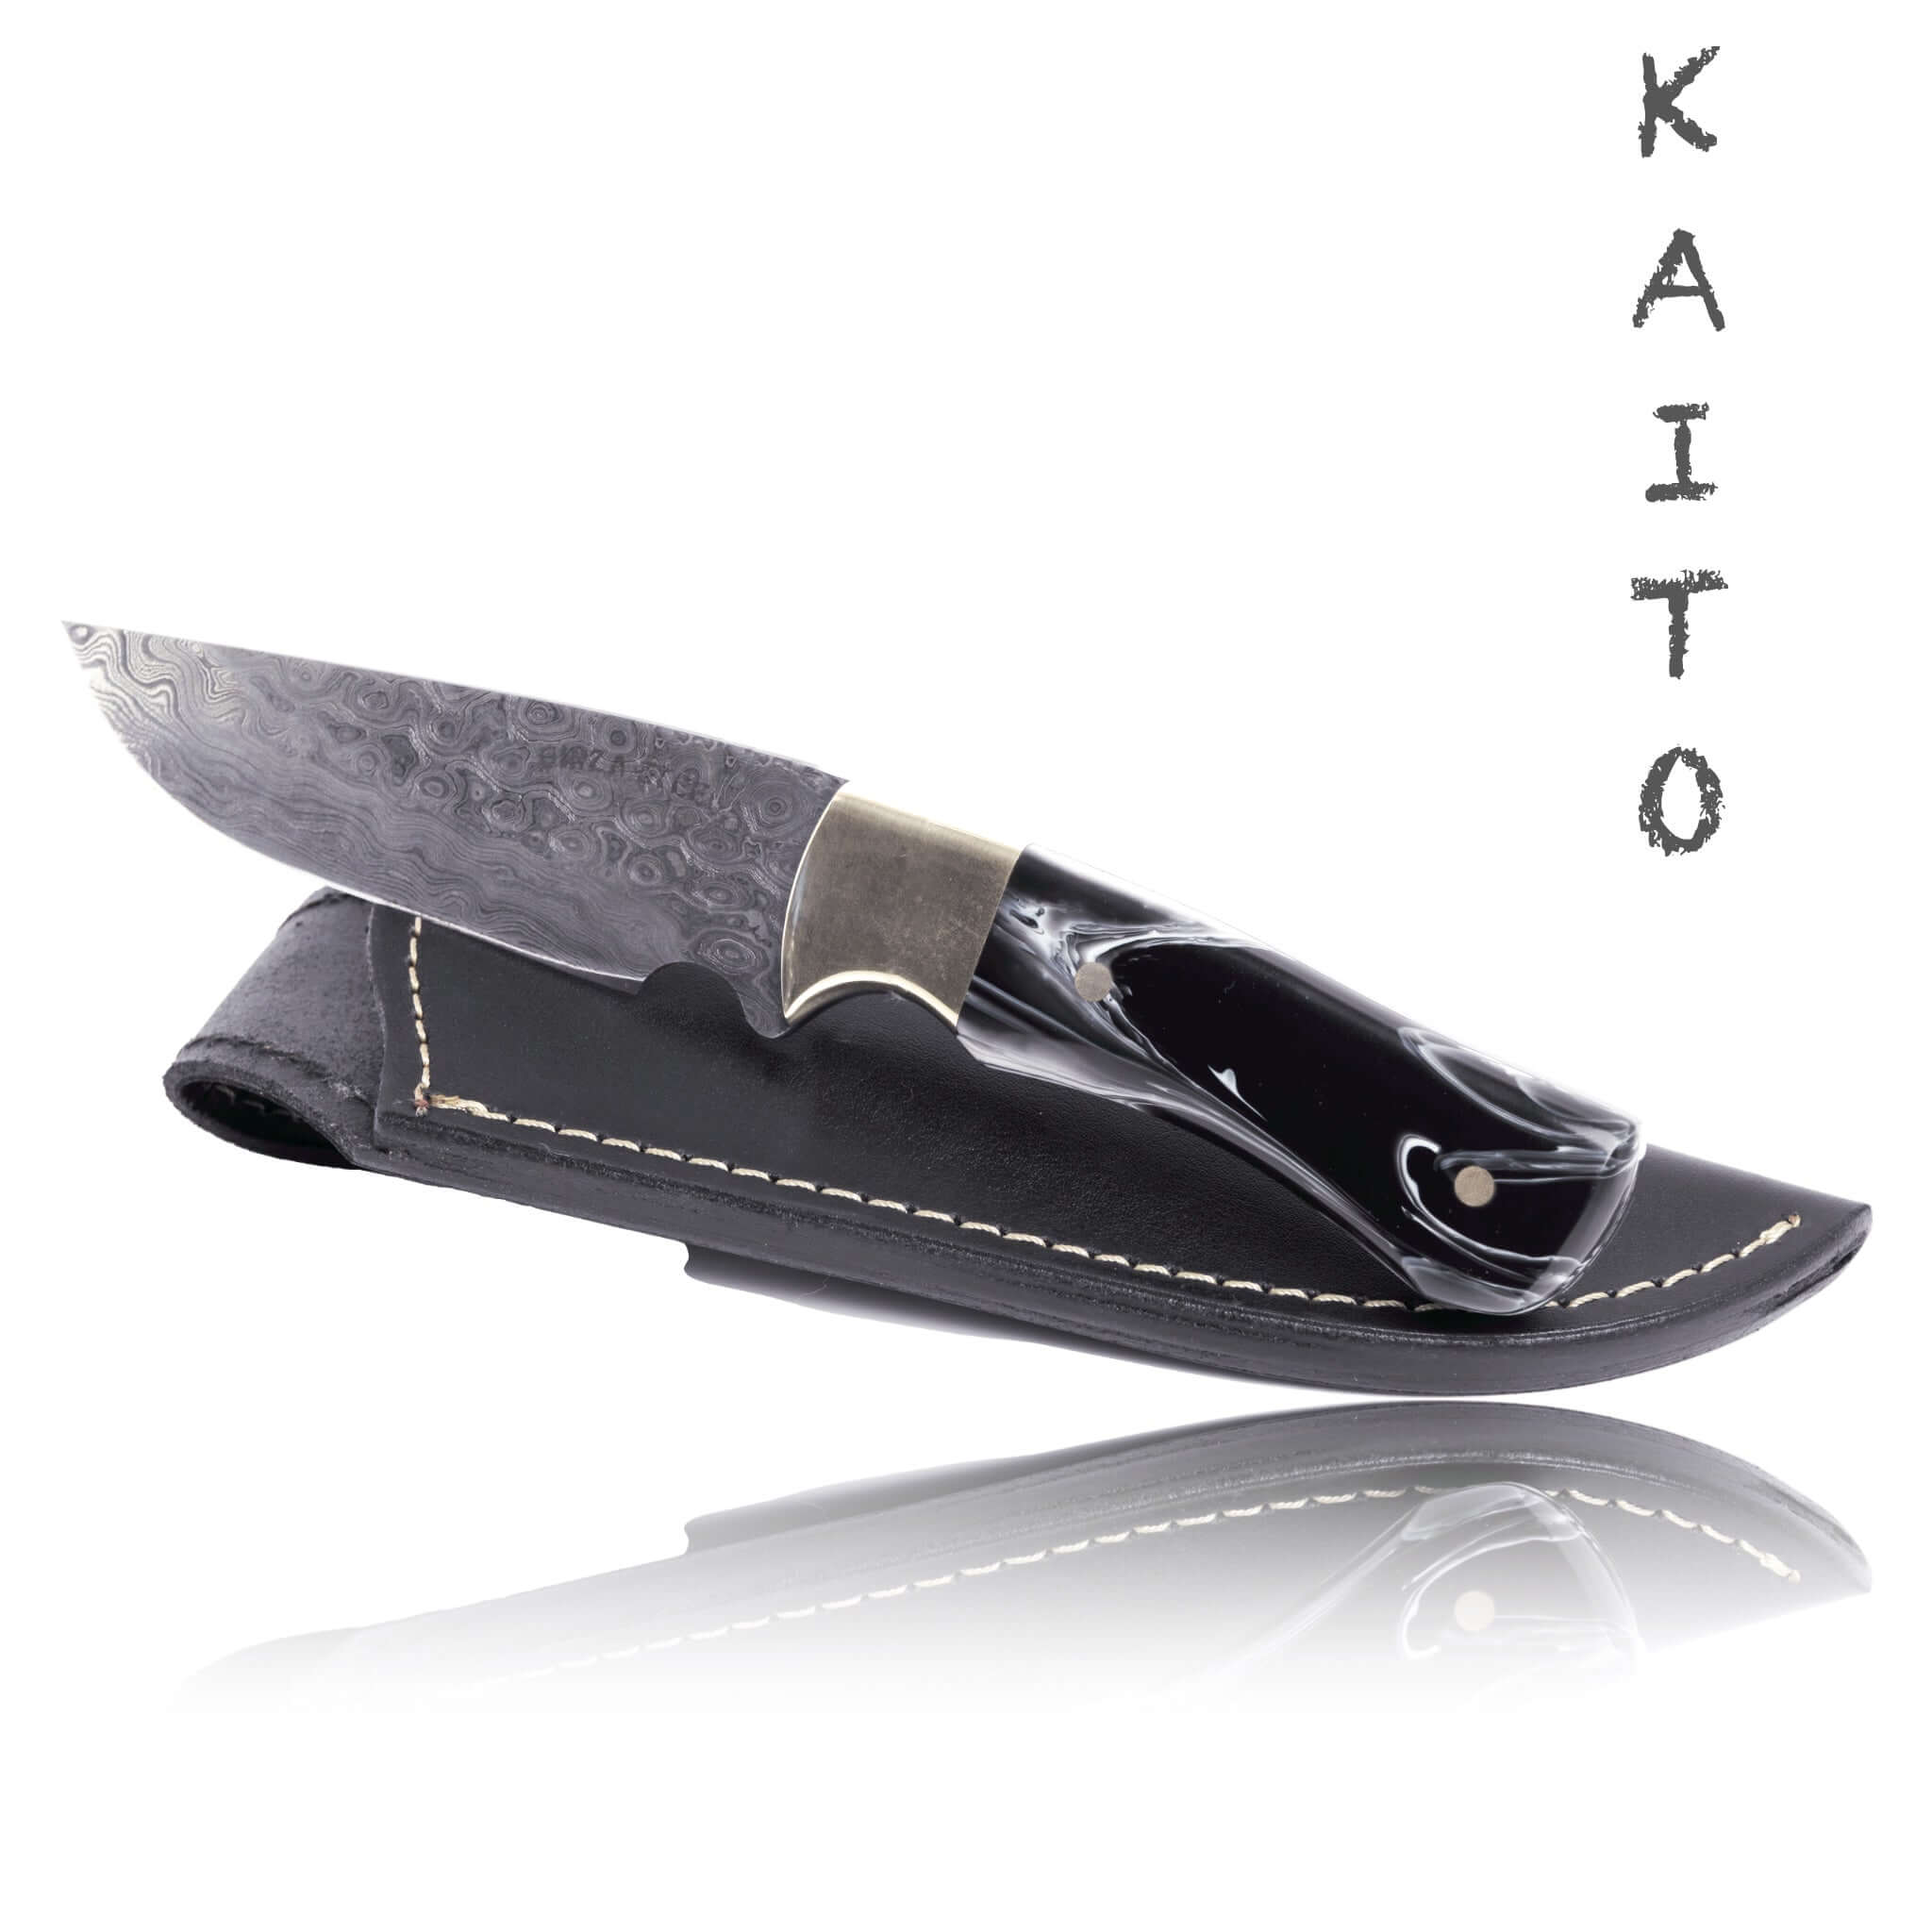 Kaito Damascus Steel Skinner Knife 4 inch blade